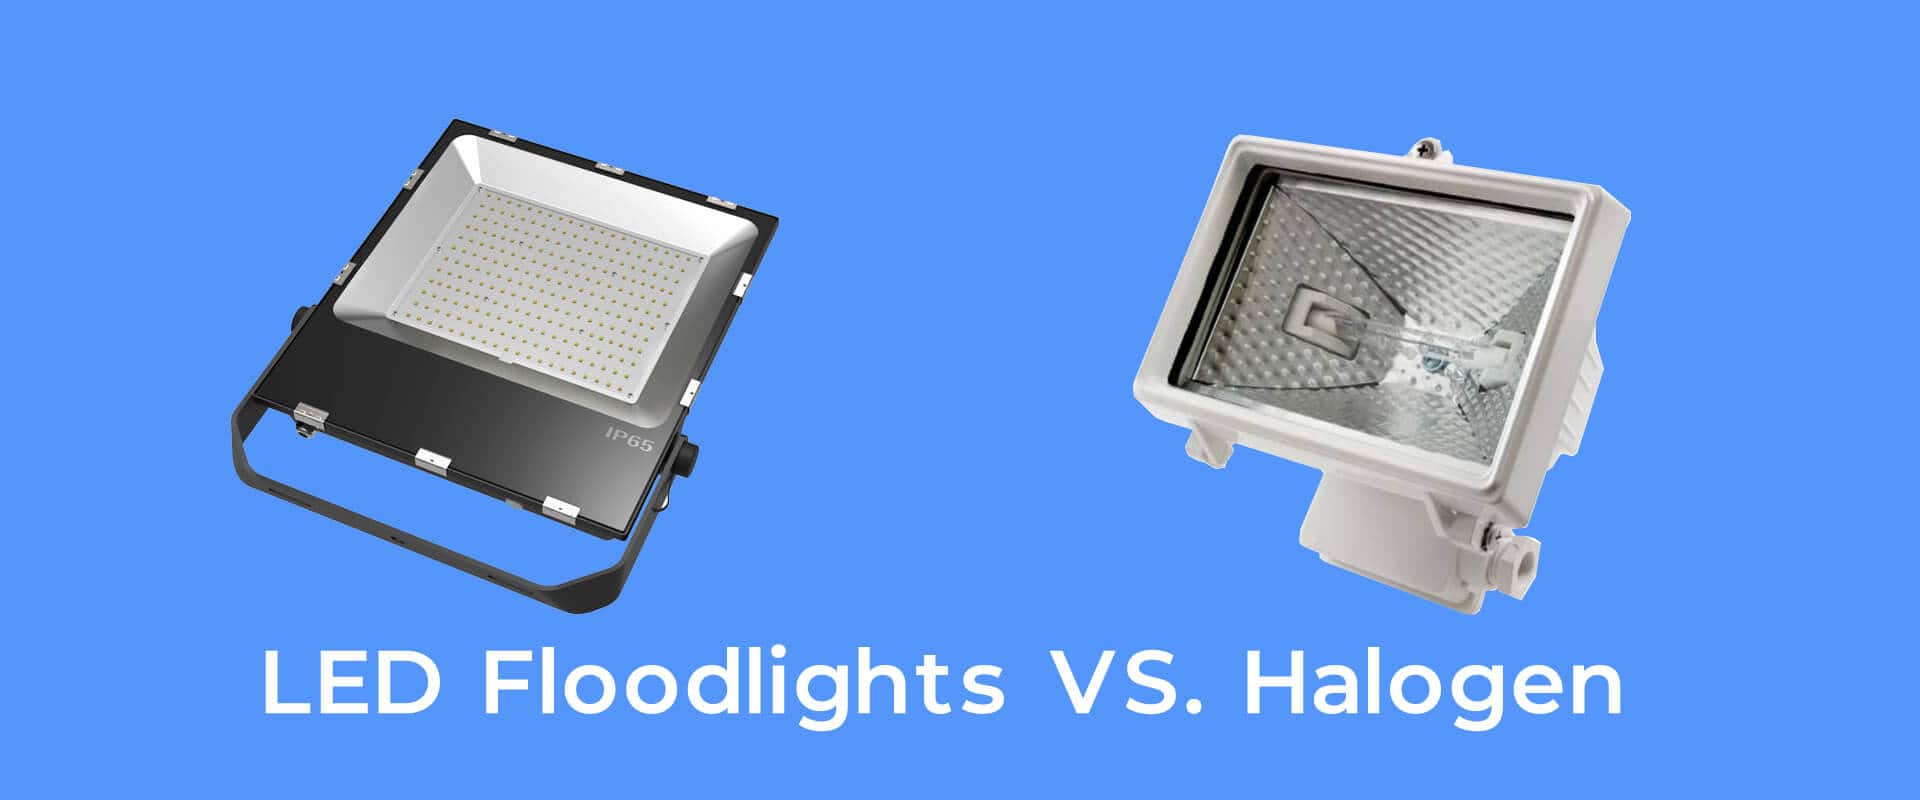 LED Floodlights VS. Halogen